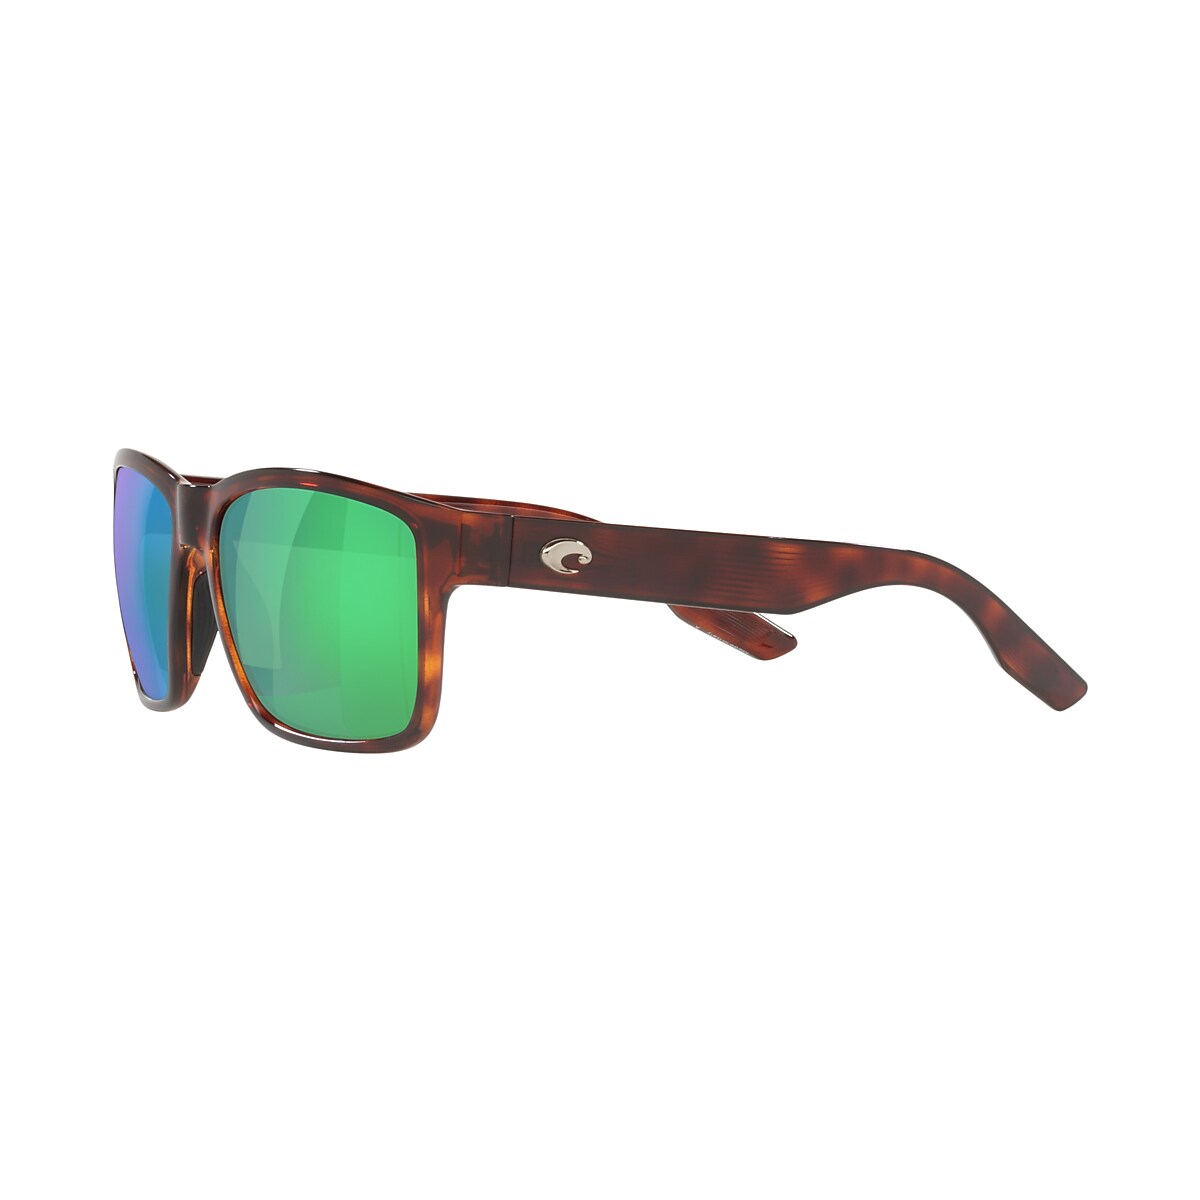 Paunch Polarized Sunglasses in Green Mirror | Costa Del Mar®